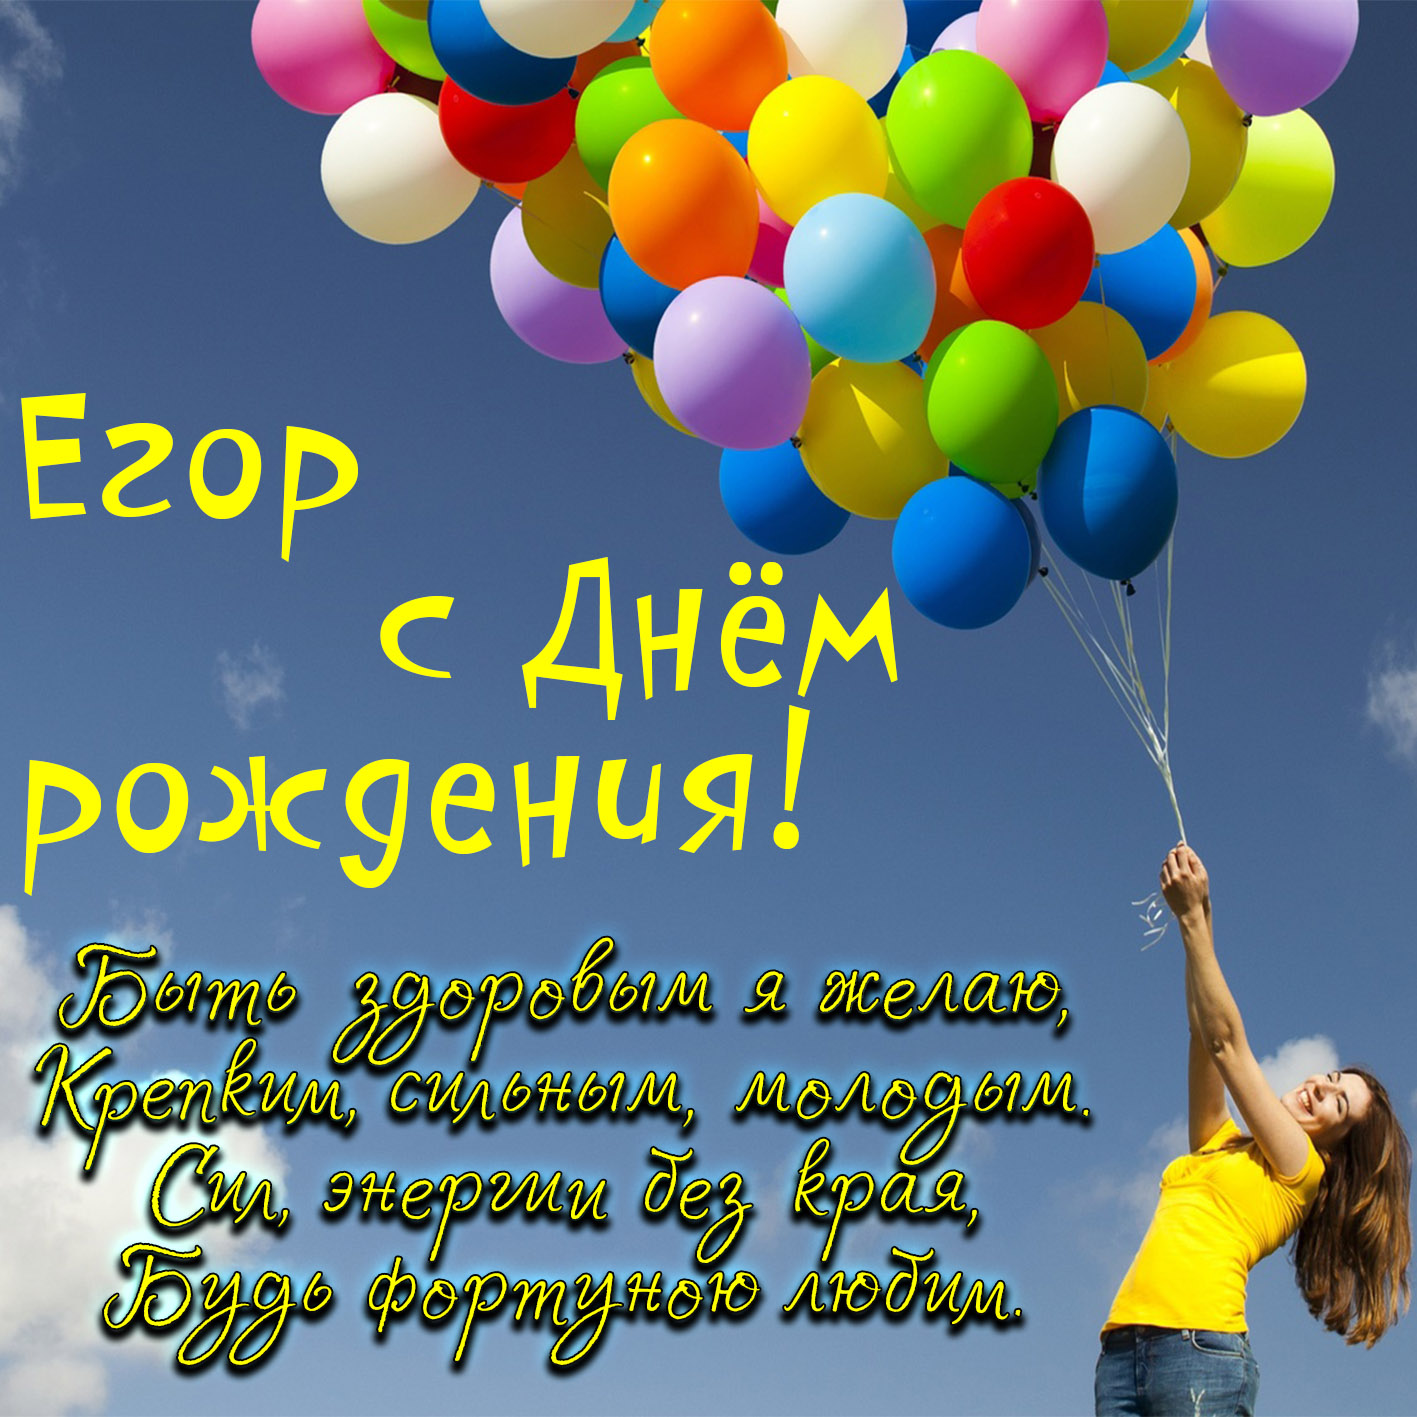 Открытка - девушка с шариками поздравляет Егора с Днём рождения